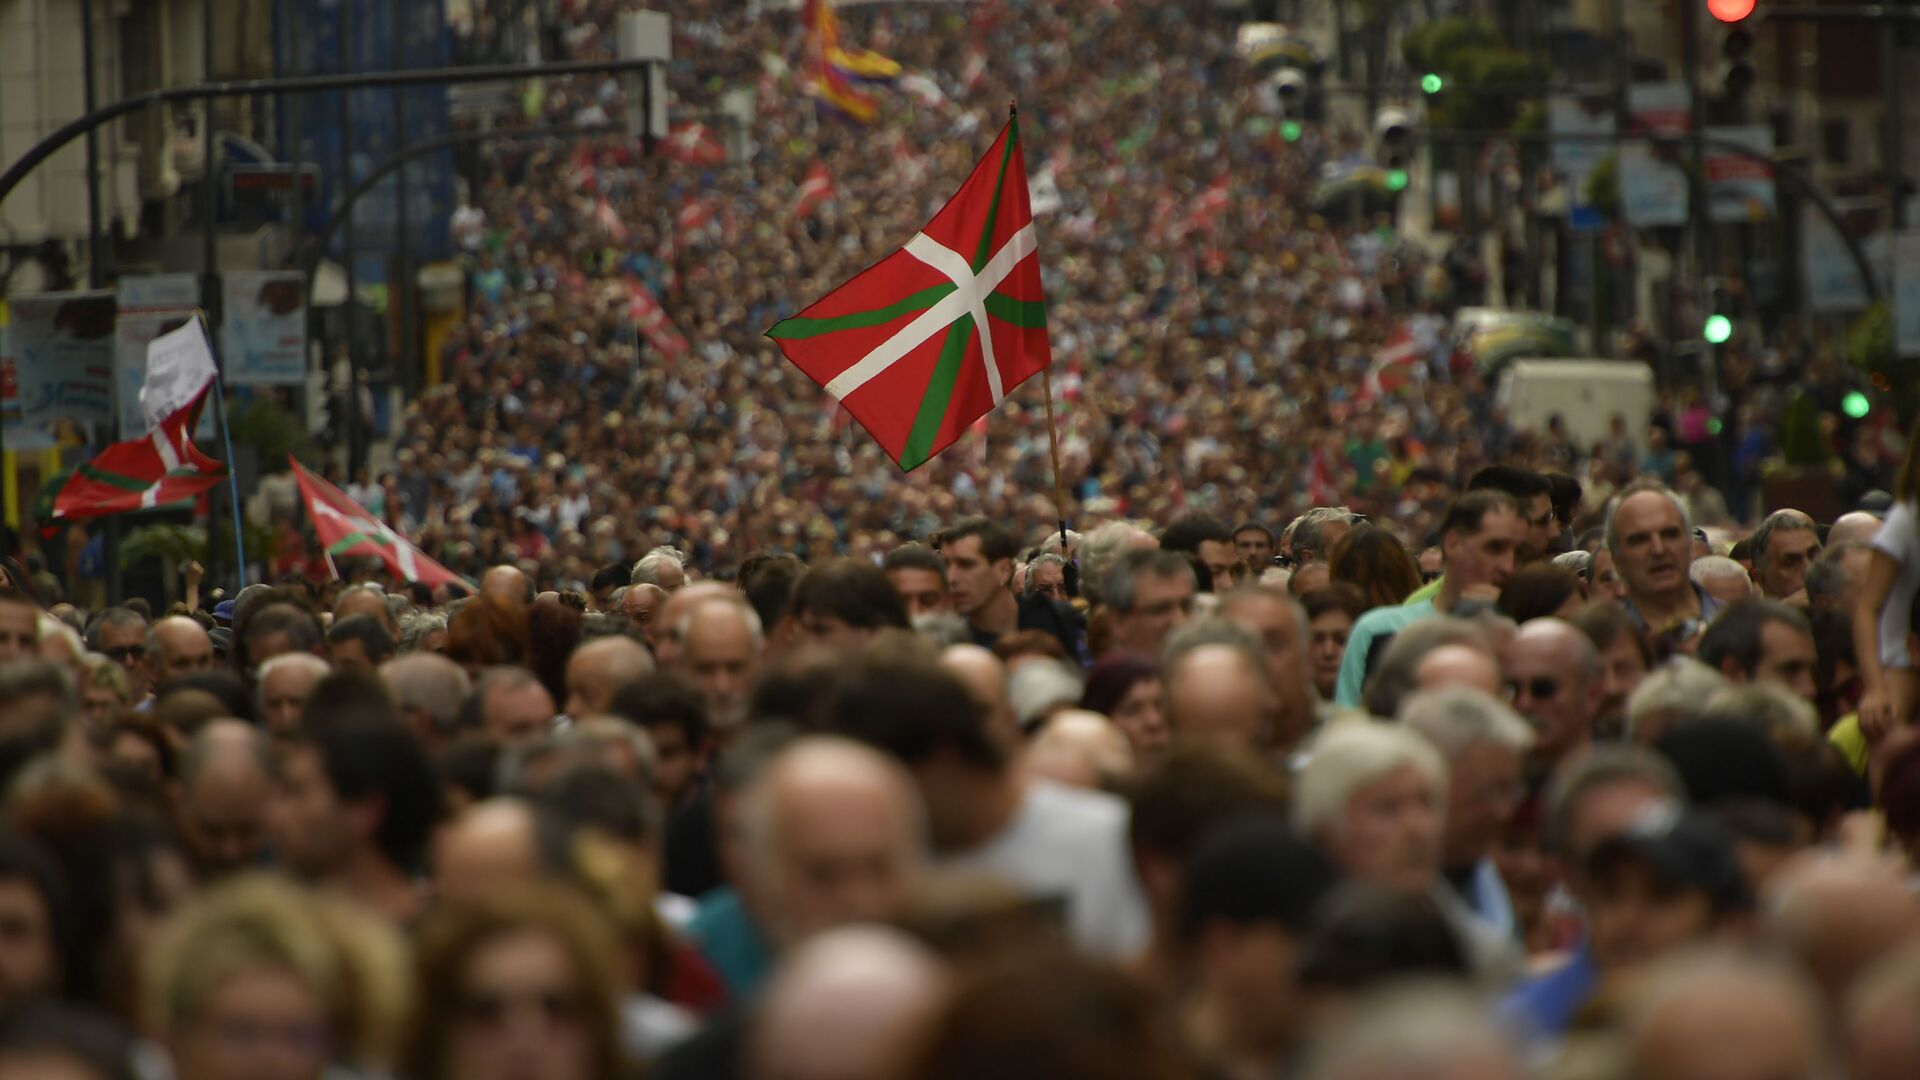 Vários milhares de manifestantes marcharam na cidade de Bilbao no norte da Espanha, no norte da Espanha, para exigir que os membros presos do grupo militante basco ETA sejam transferidos para prisões perto de suas casas (foto de arquivo) - Sputnik Brasil, 1920, 27.10.2021